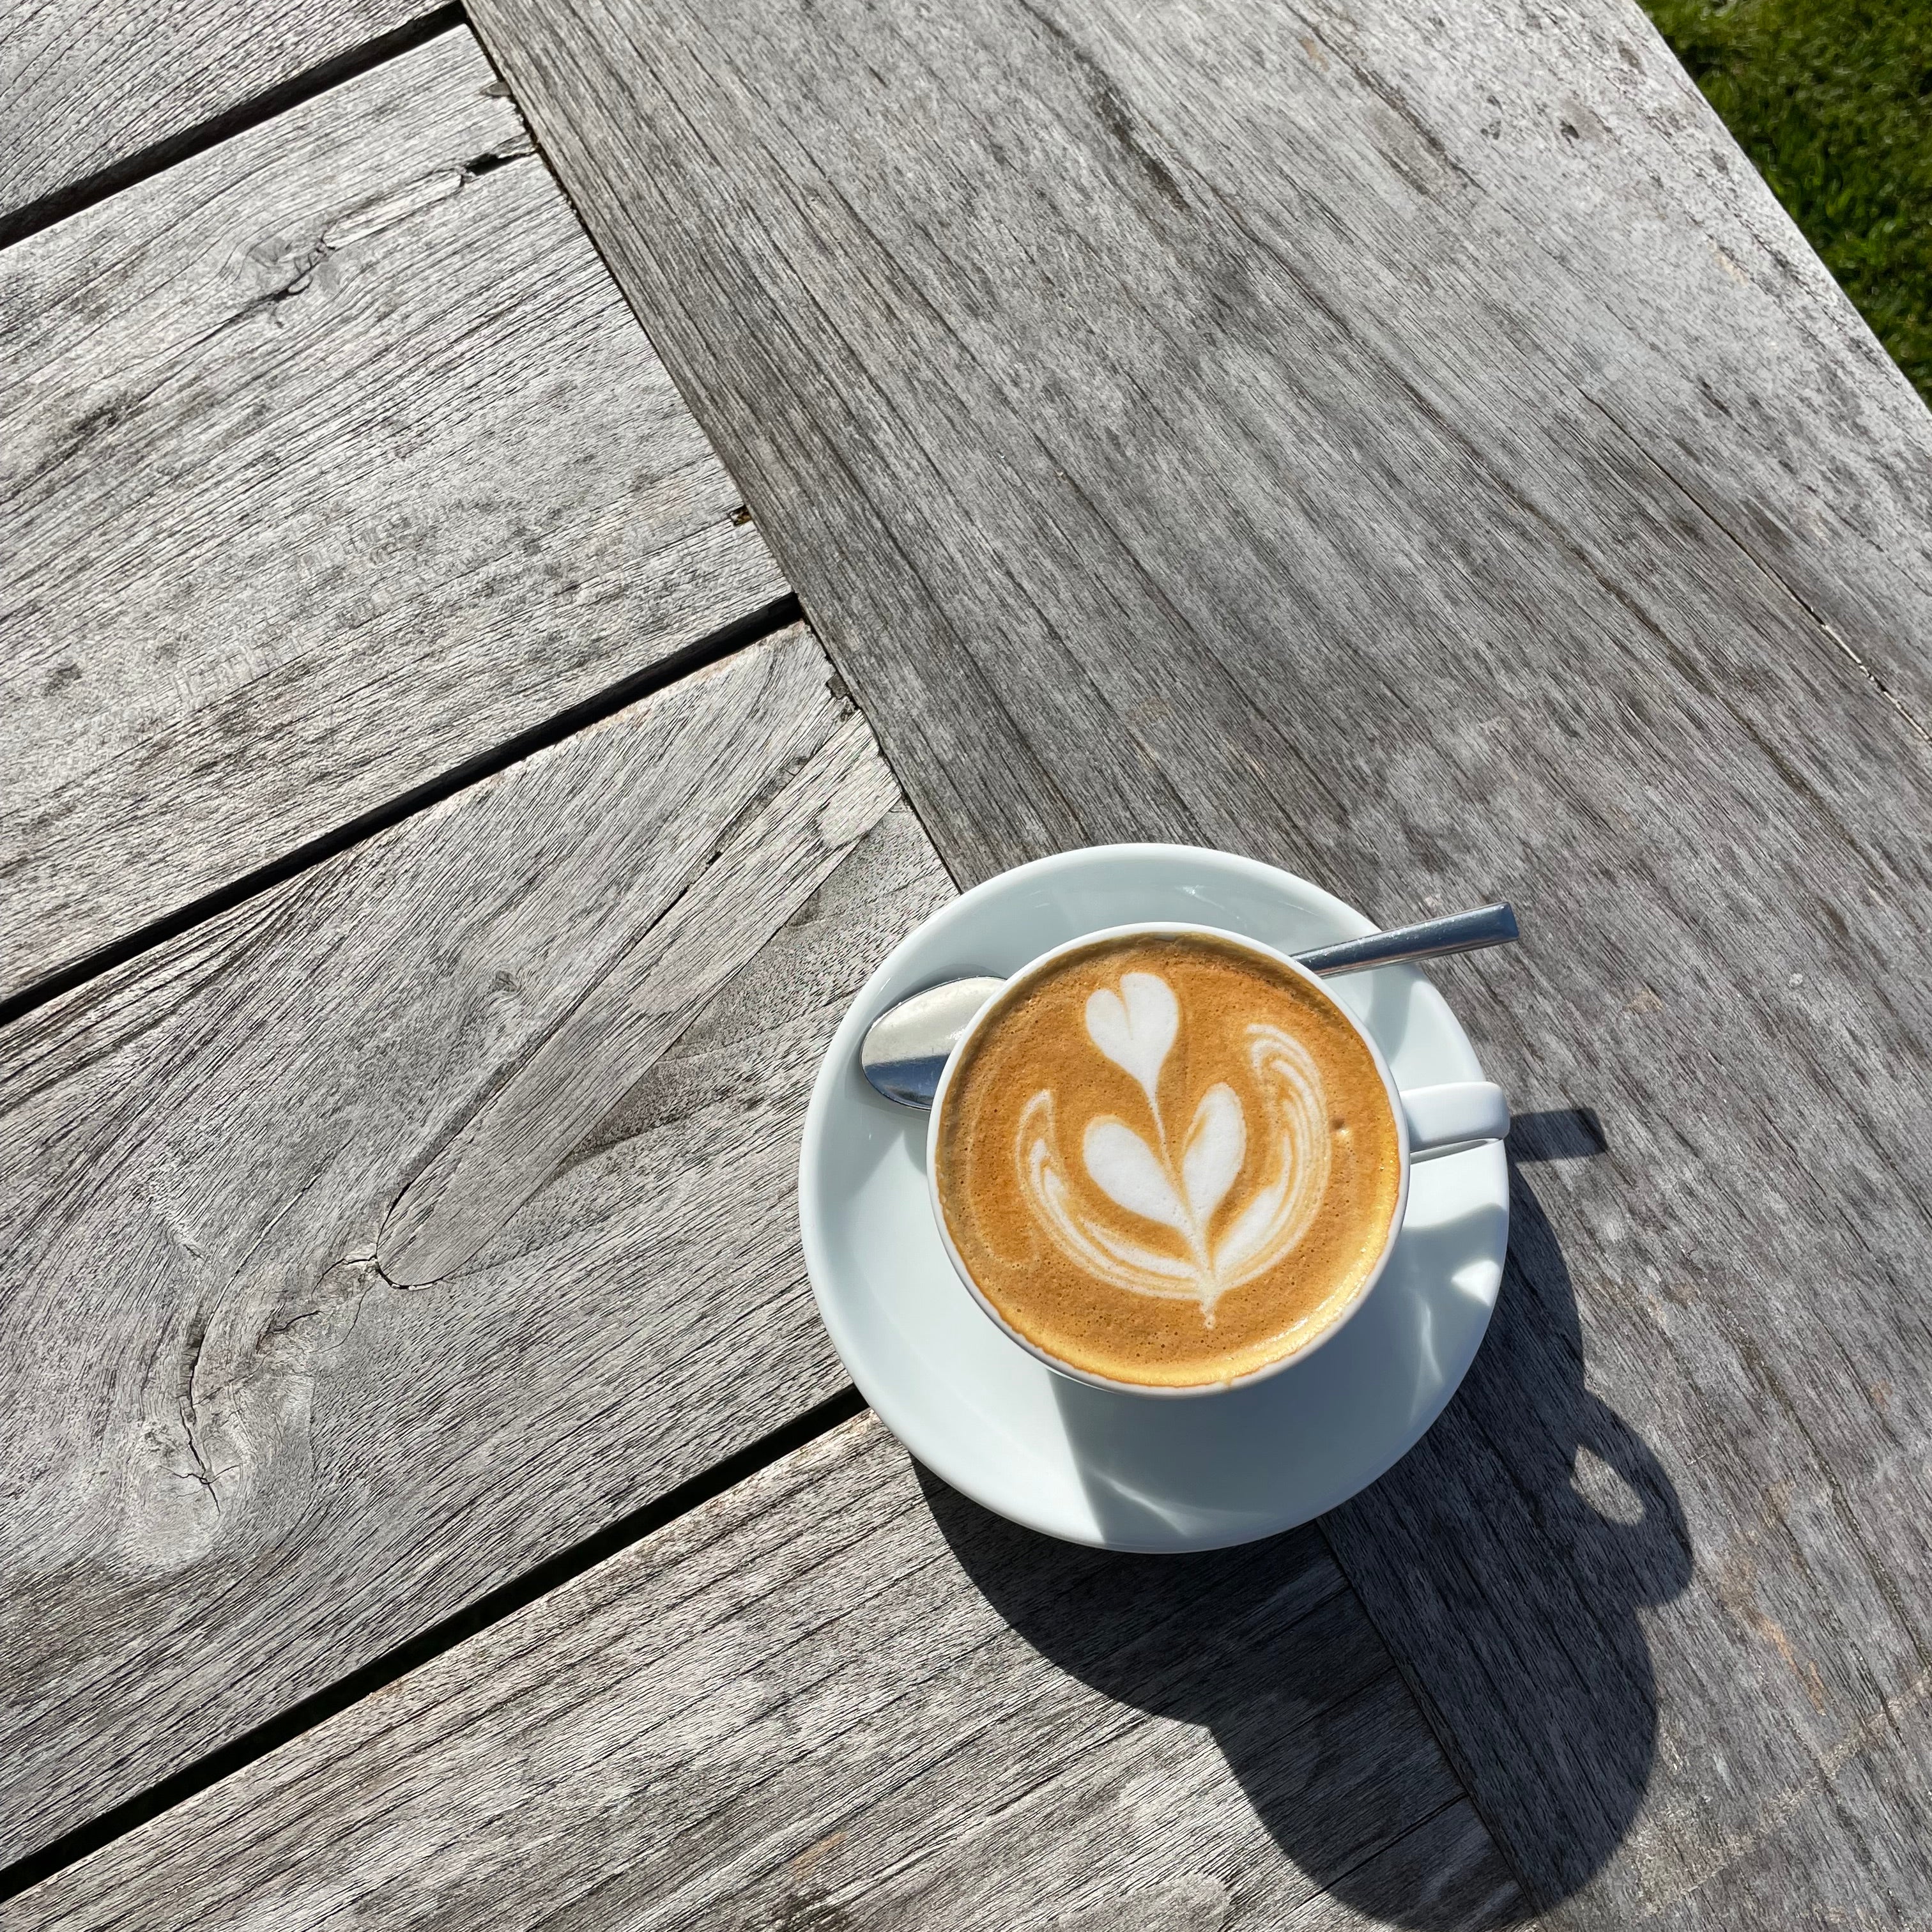 Kaffeekonsum während deiner Periode - Das solltest du wissen